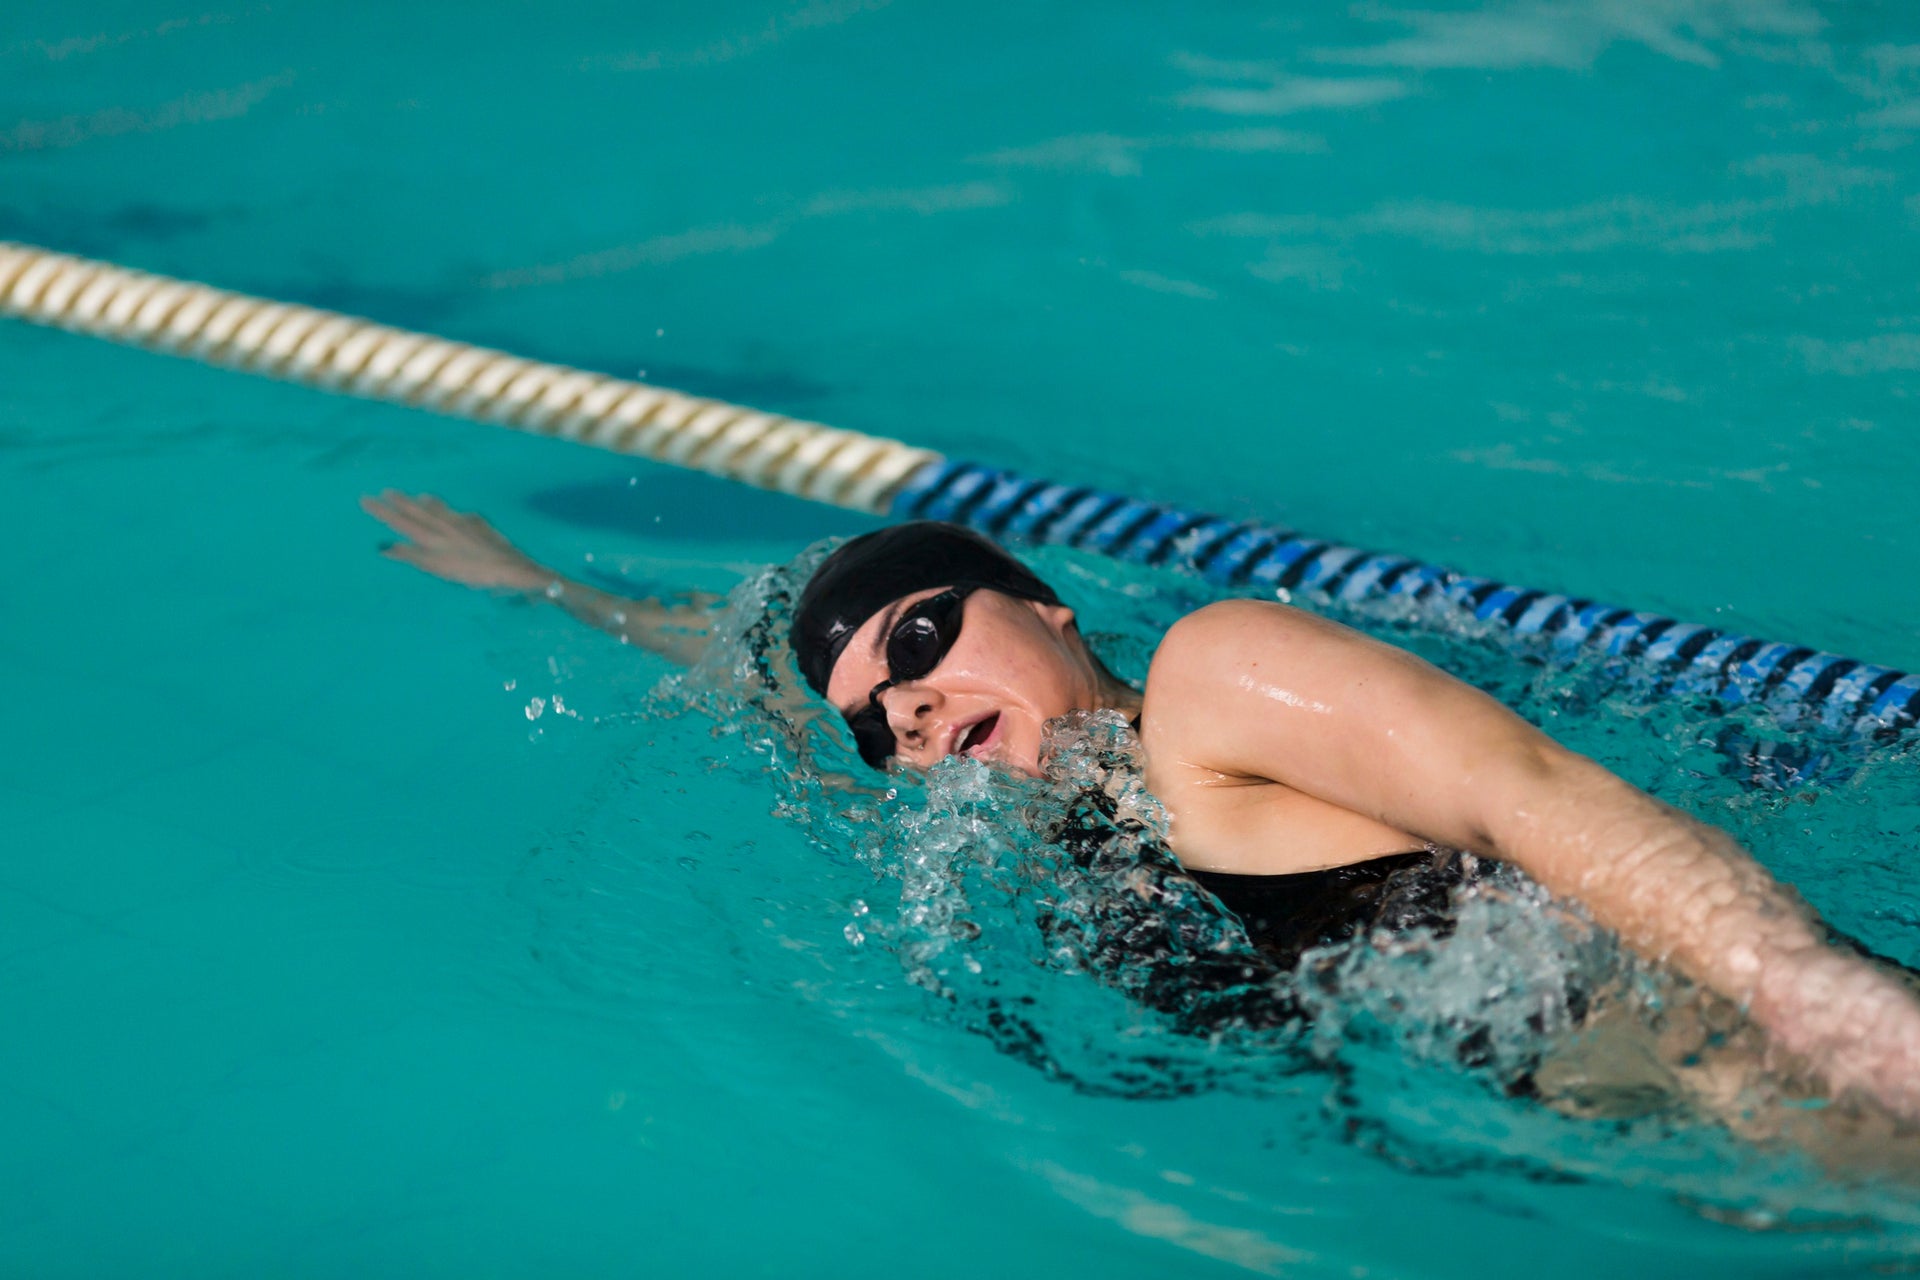 Estilo libre o crol: conociendo la natación